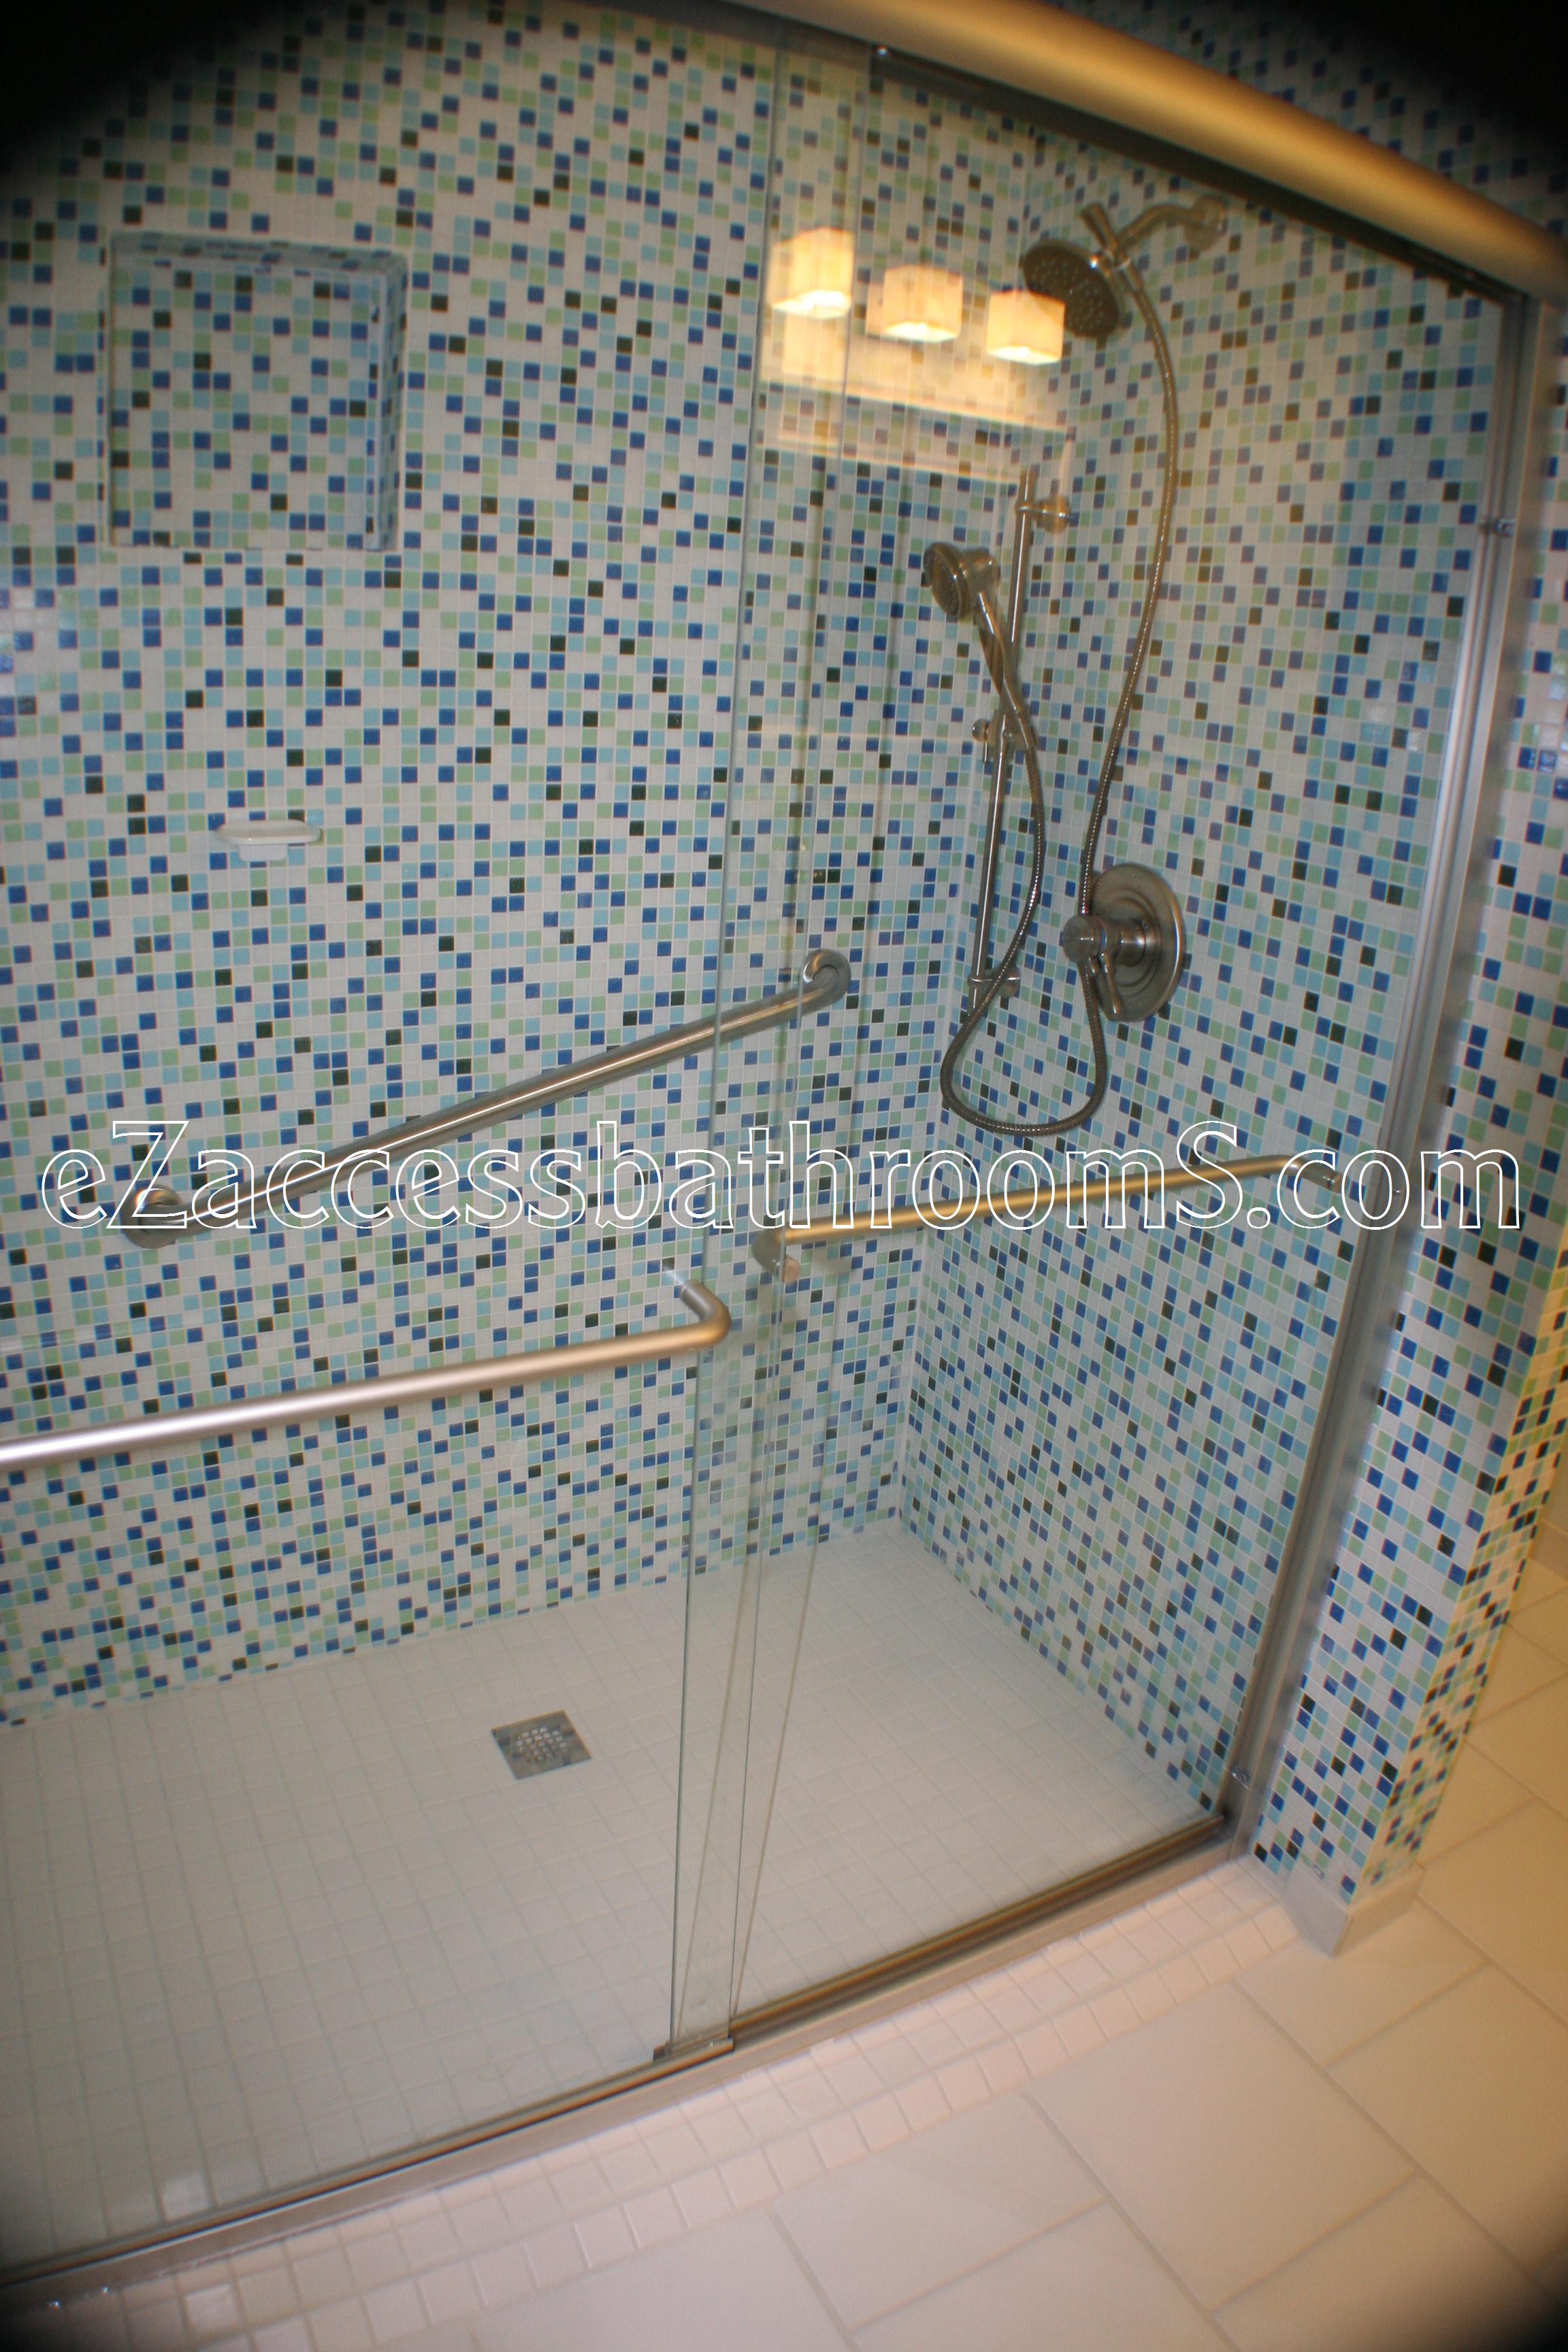 rollin shower ezaccessbathrooms.com 0036.JPG